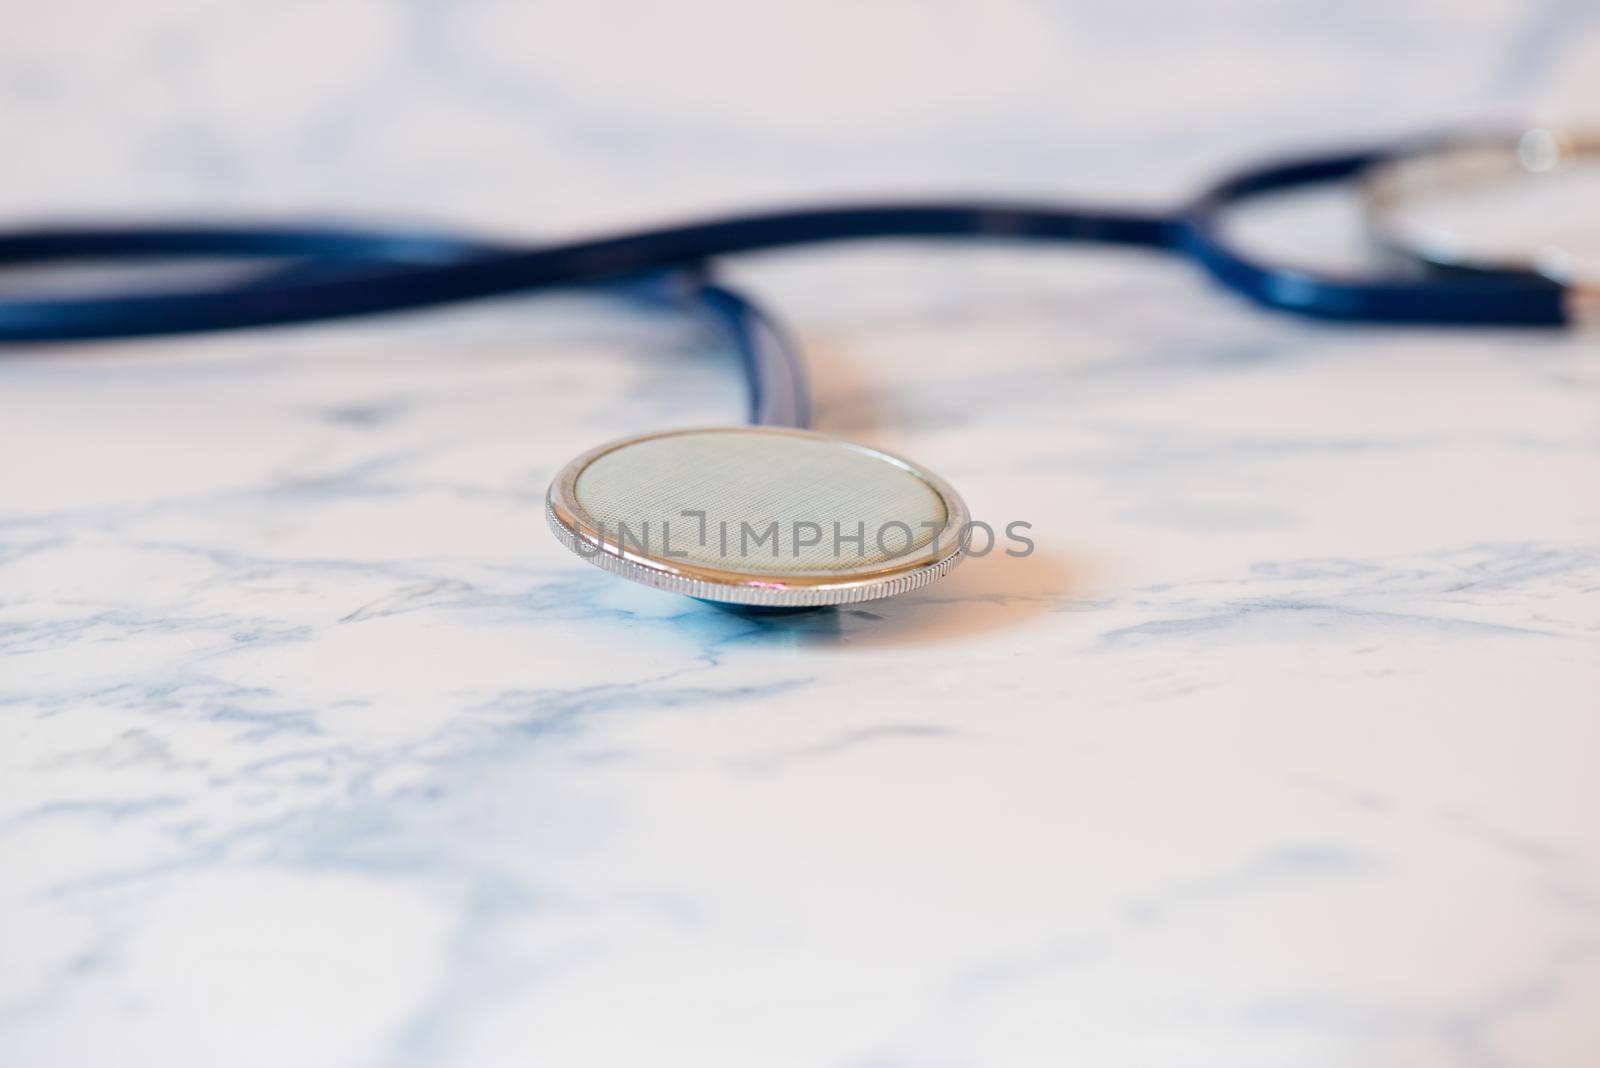 Medical stethoscope or phonendoscope over light blue background by anytka